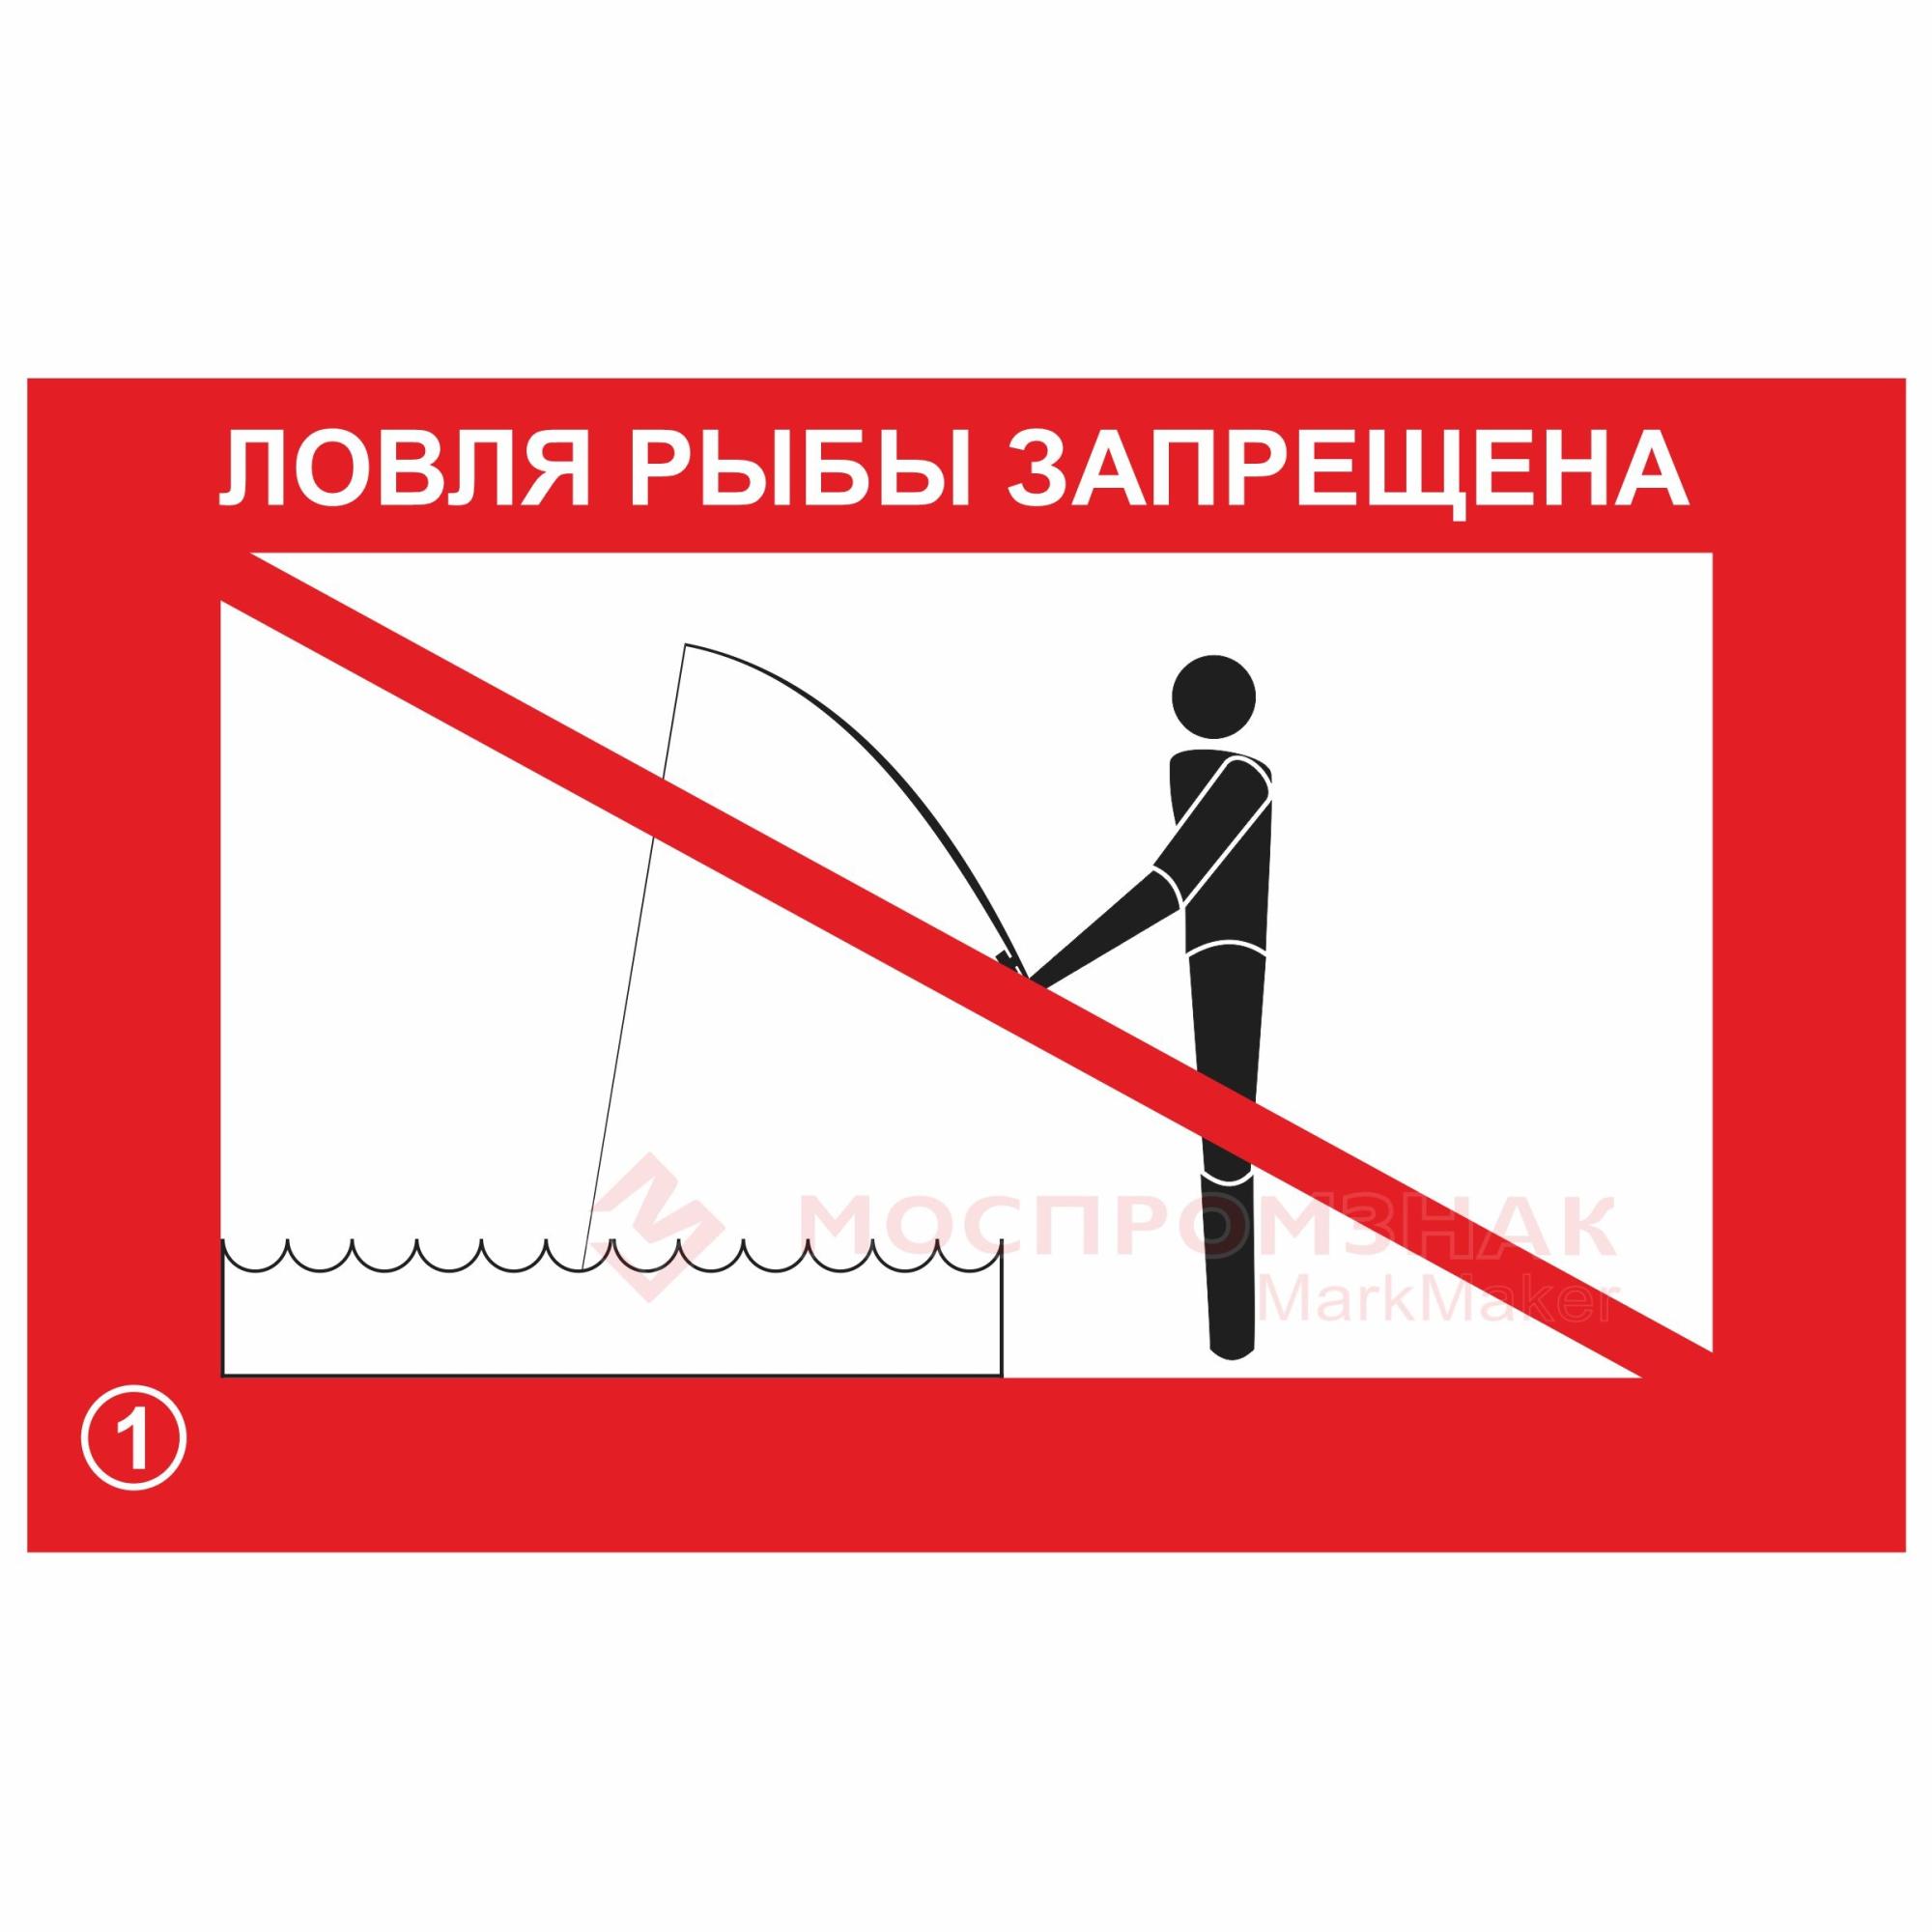 Запрет на ловлю удочкой. Ловля рыбы запрещена. Ловля рыбы запрещена знак. Ловля рыбы запрещена табличка. Рыбная ловля запрещена табличка.